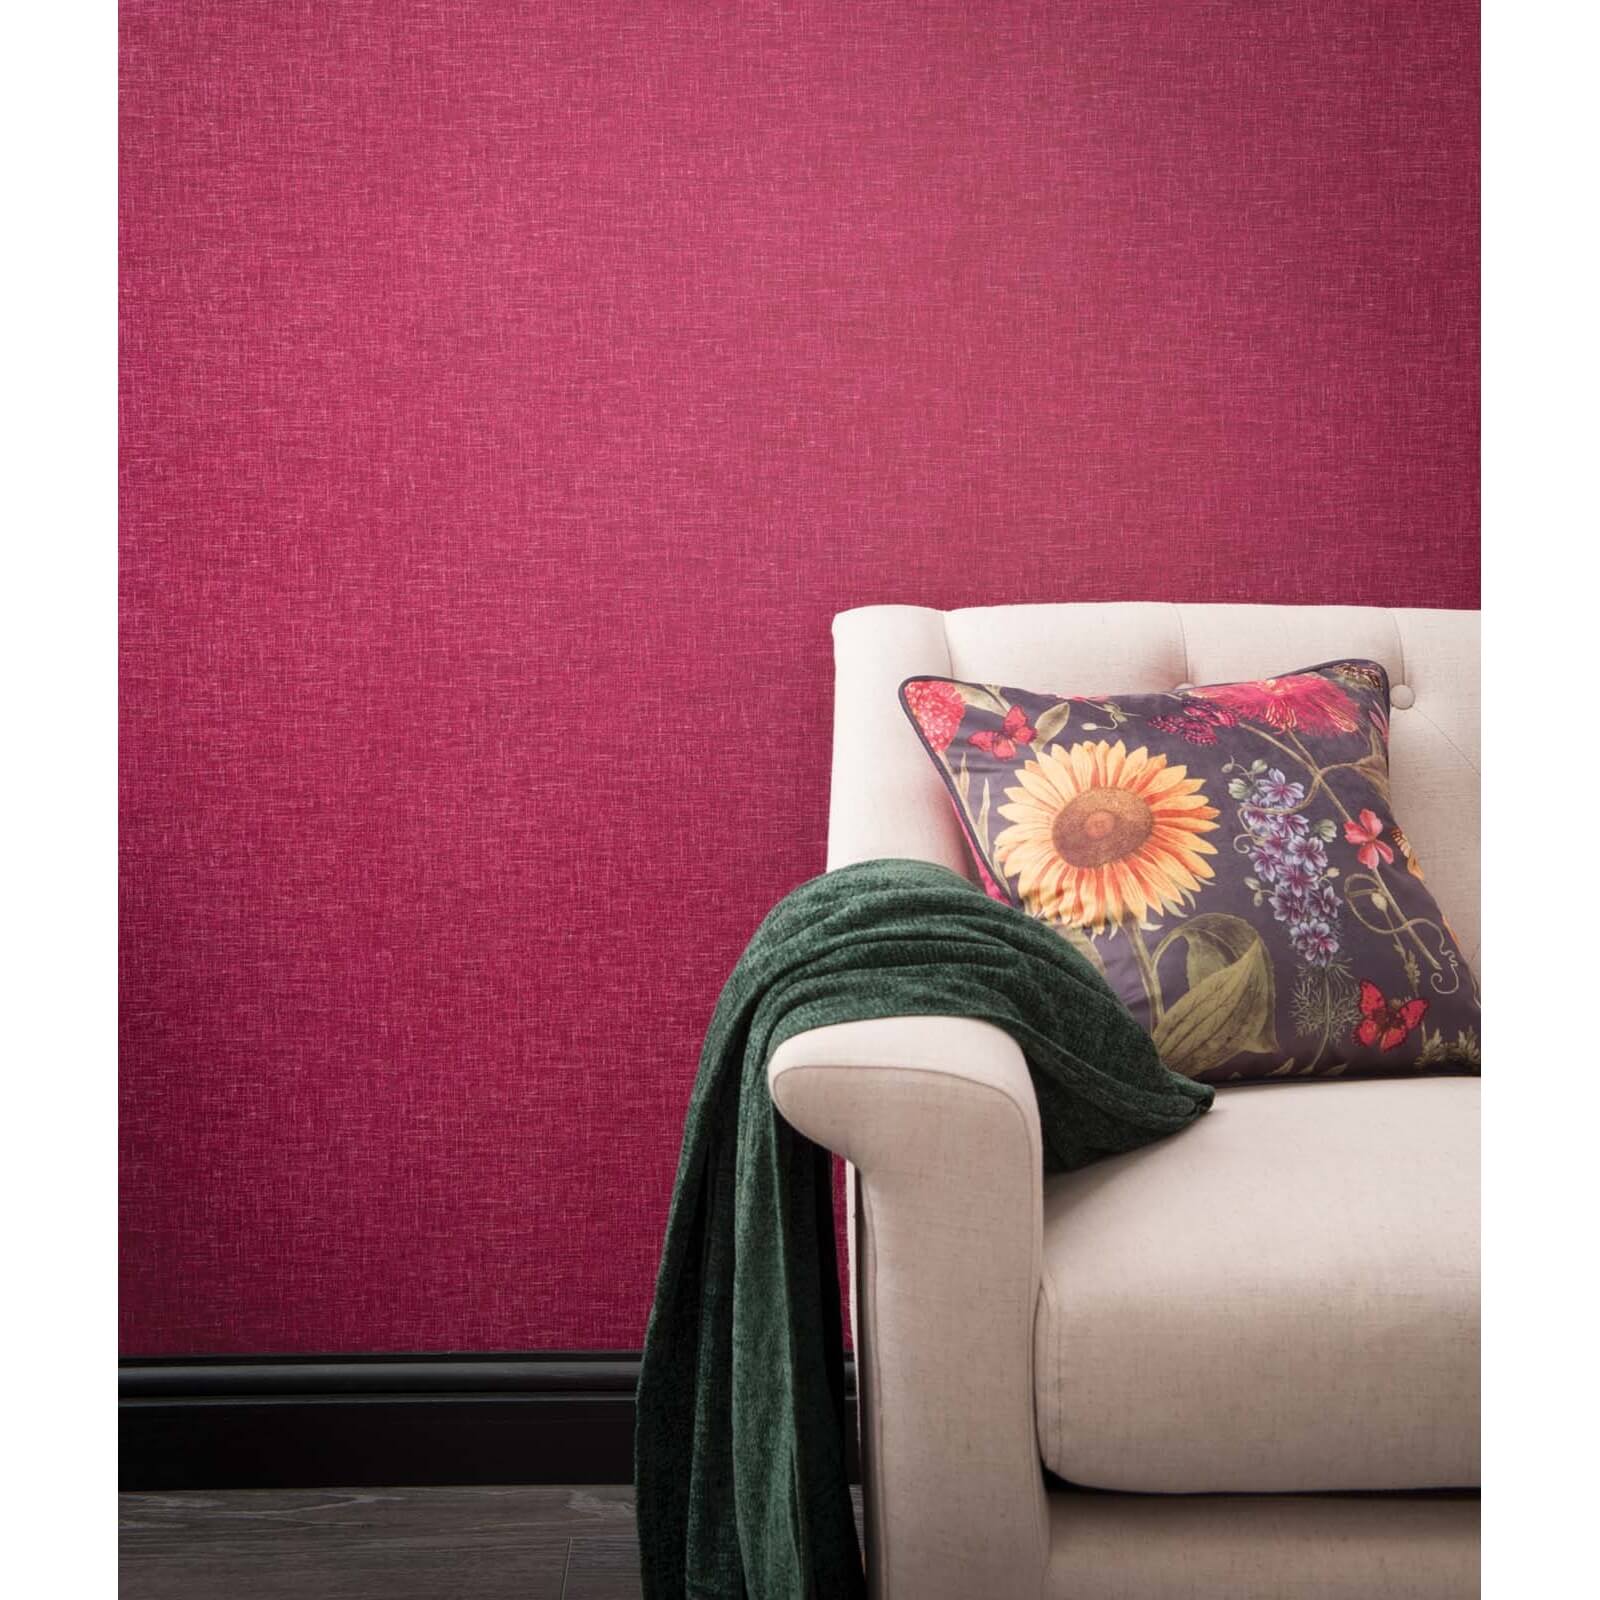 Arthouse Linen Texture Plain Textured Raspberry Wallpaper